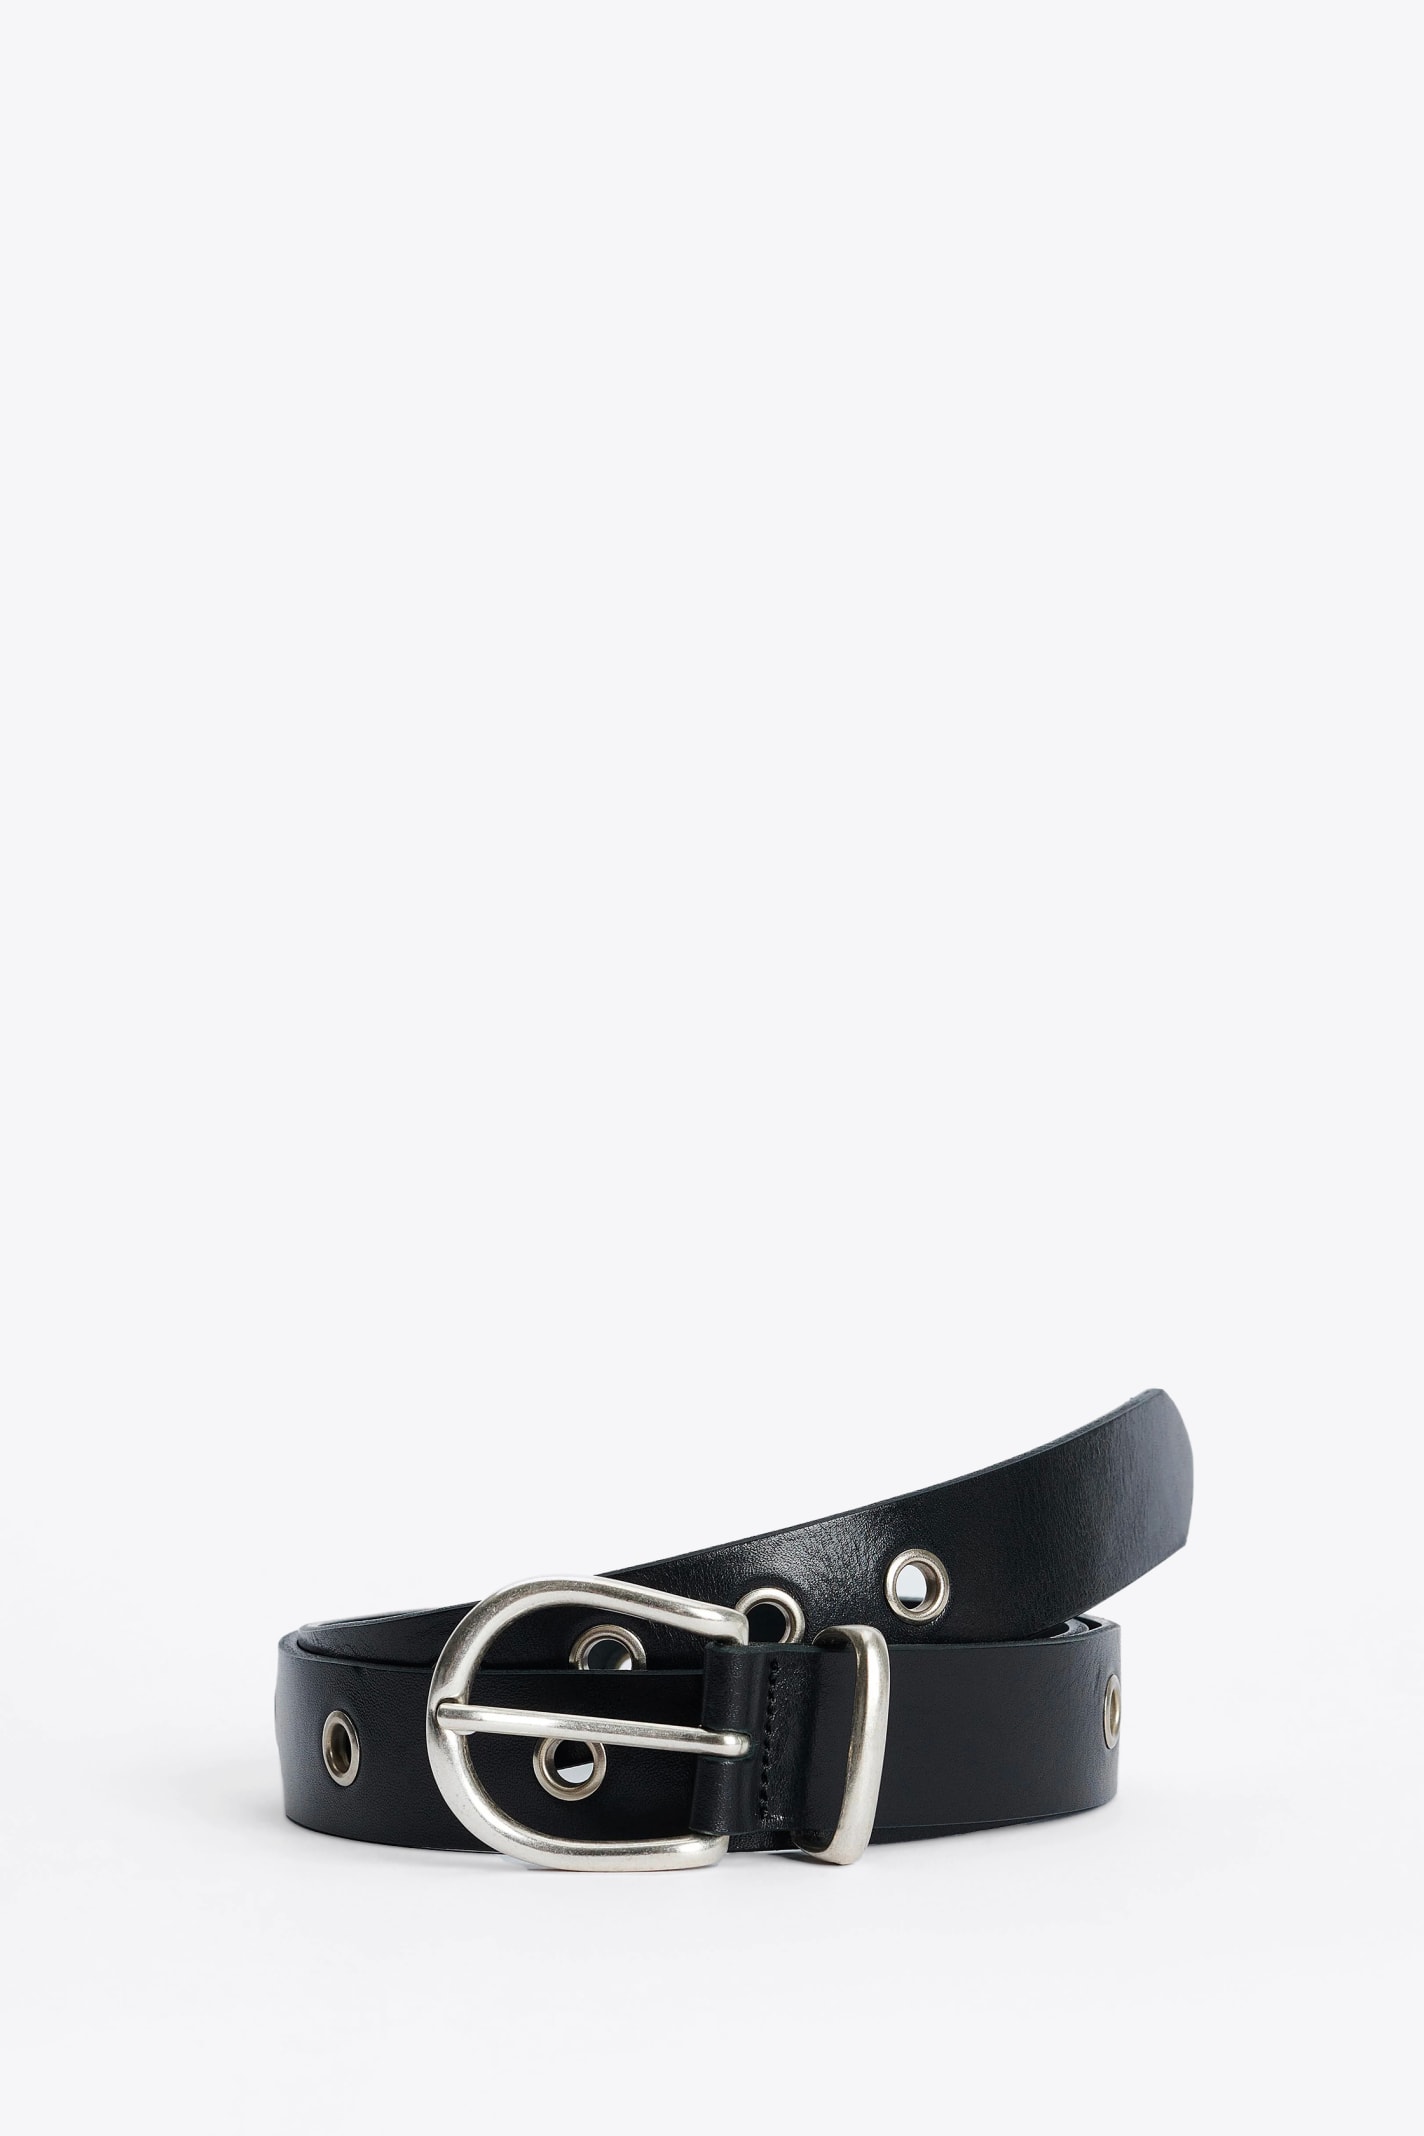 #8021 Black leather belts with metal eyelets - Eyelet Belt 3cm